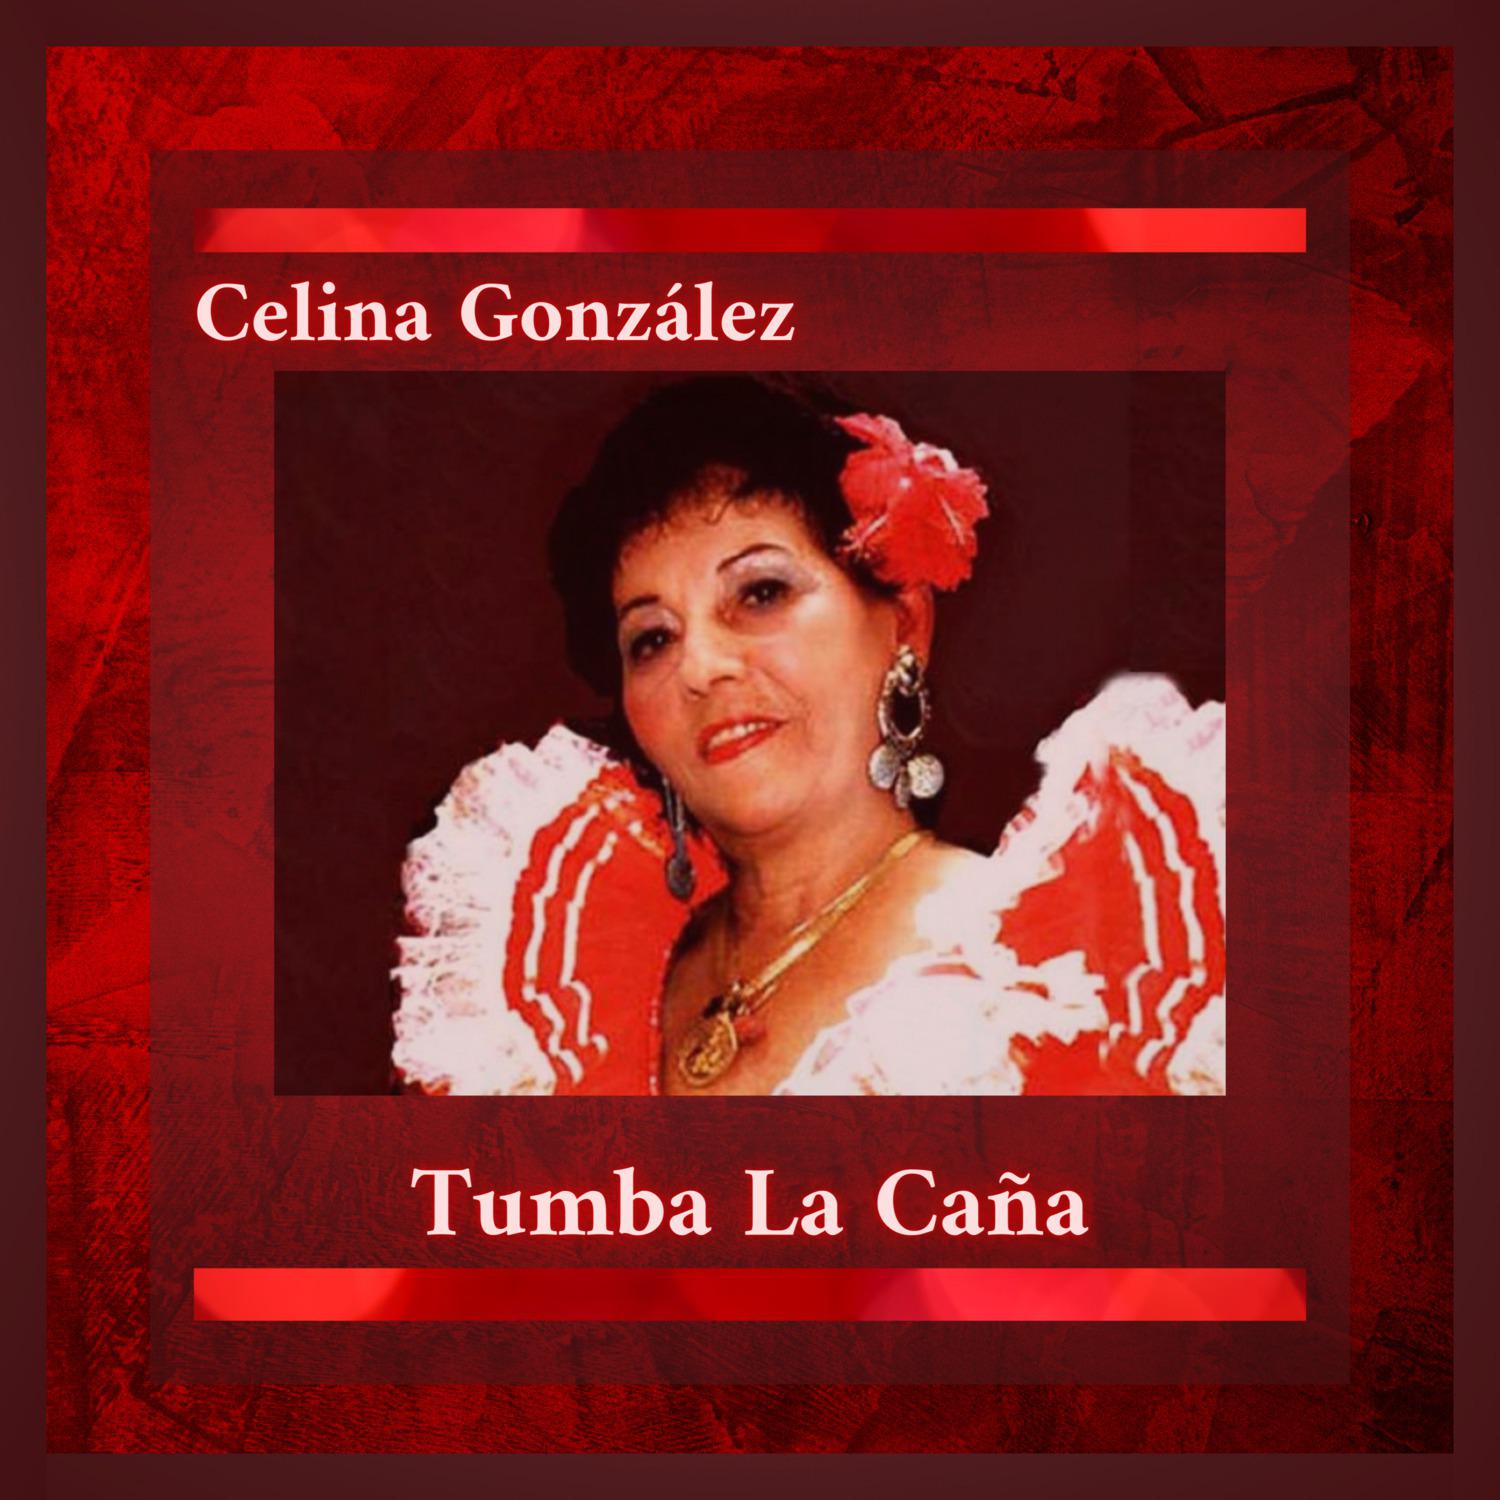 Celina González - Tumba la Caña